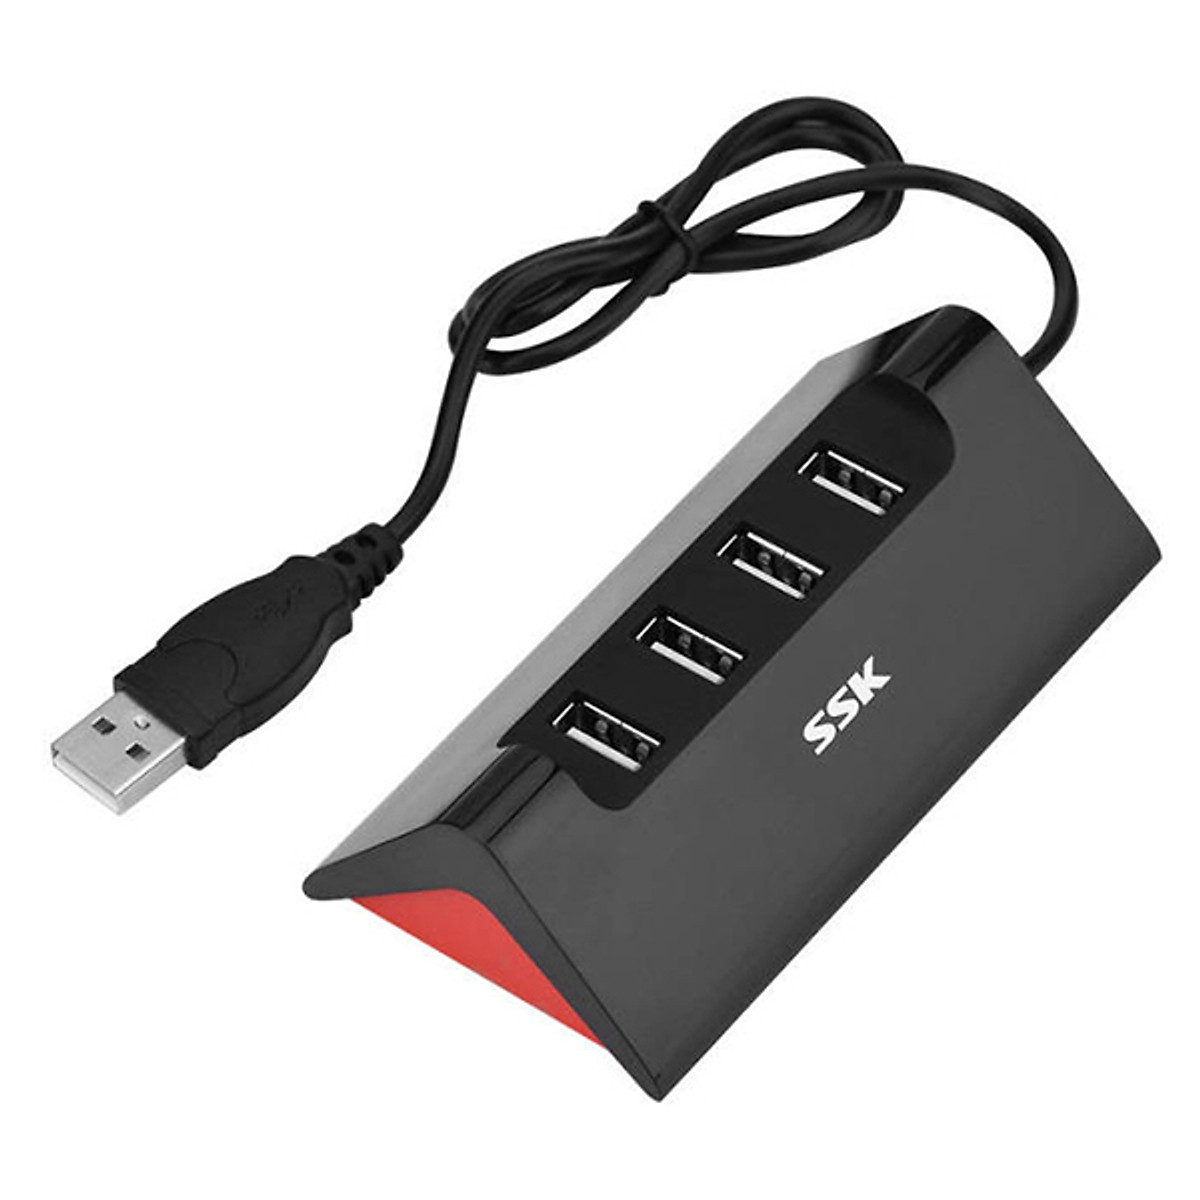 HUP CHIA USB 3.0 SSK- bão hành 06 tháng